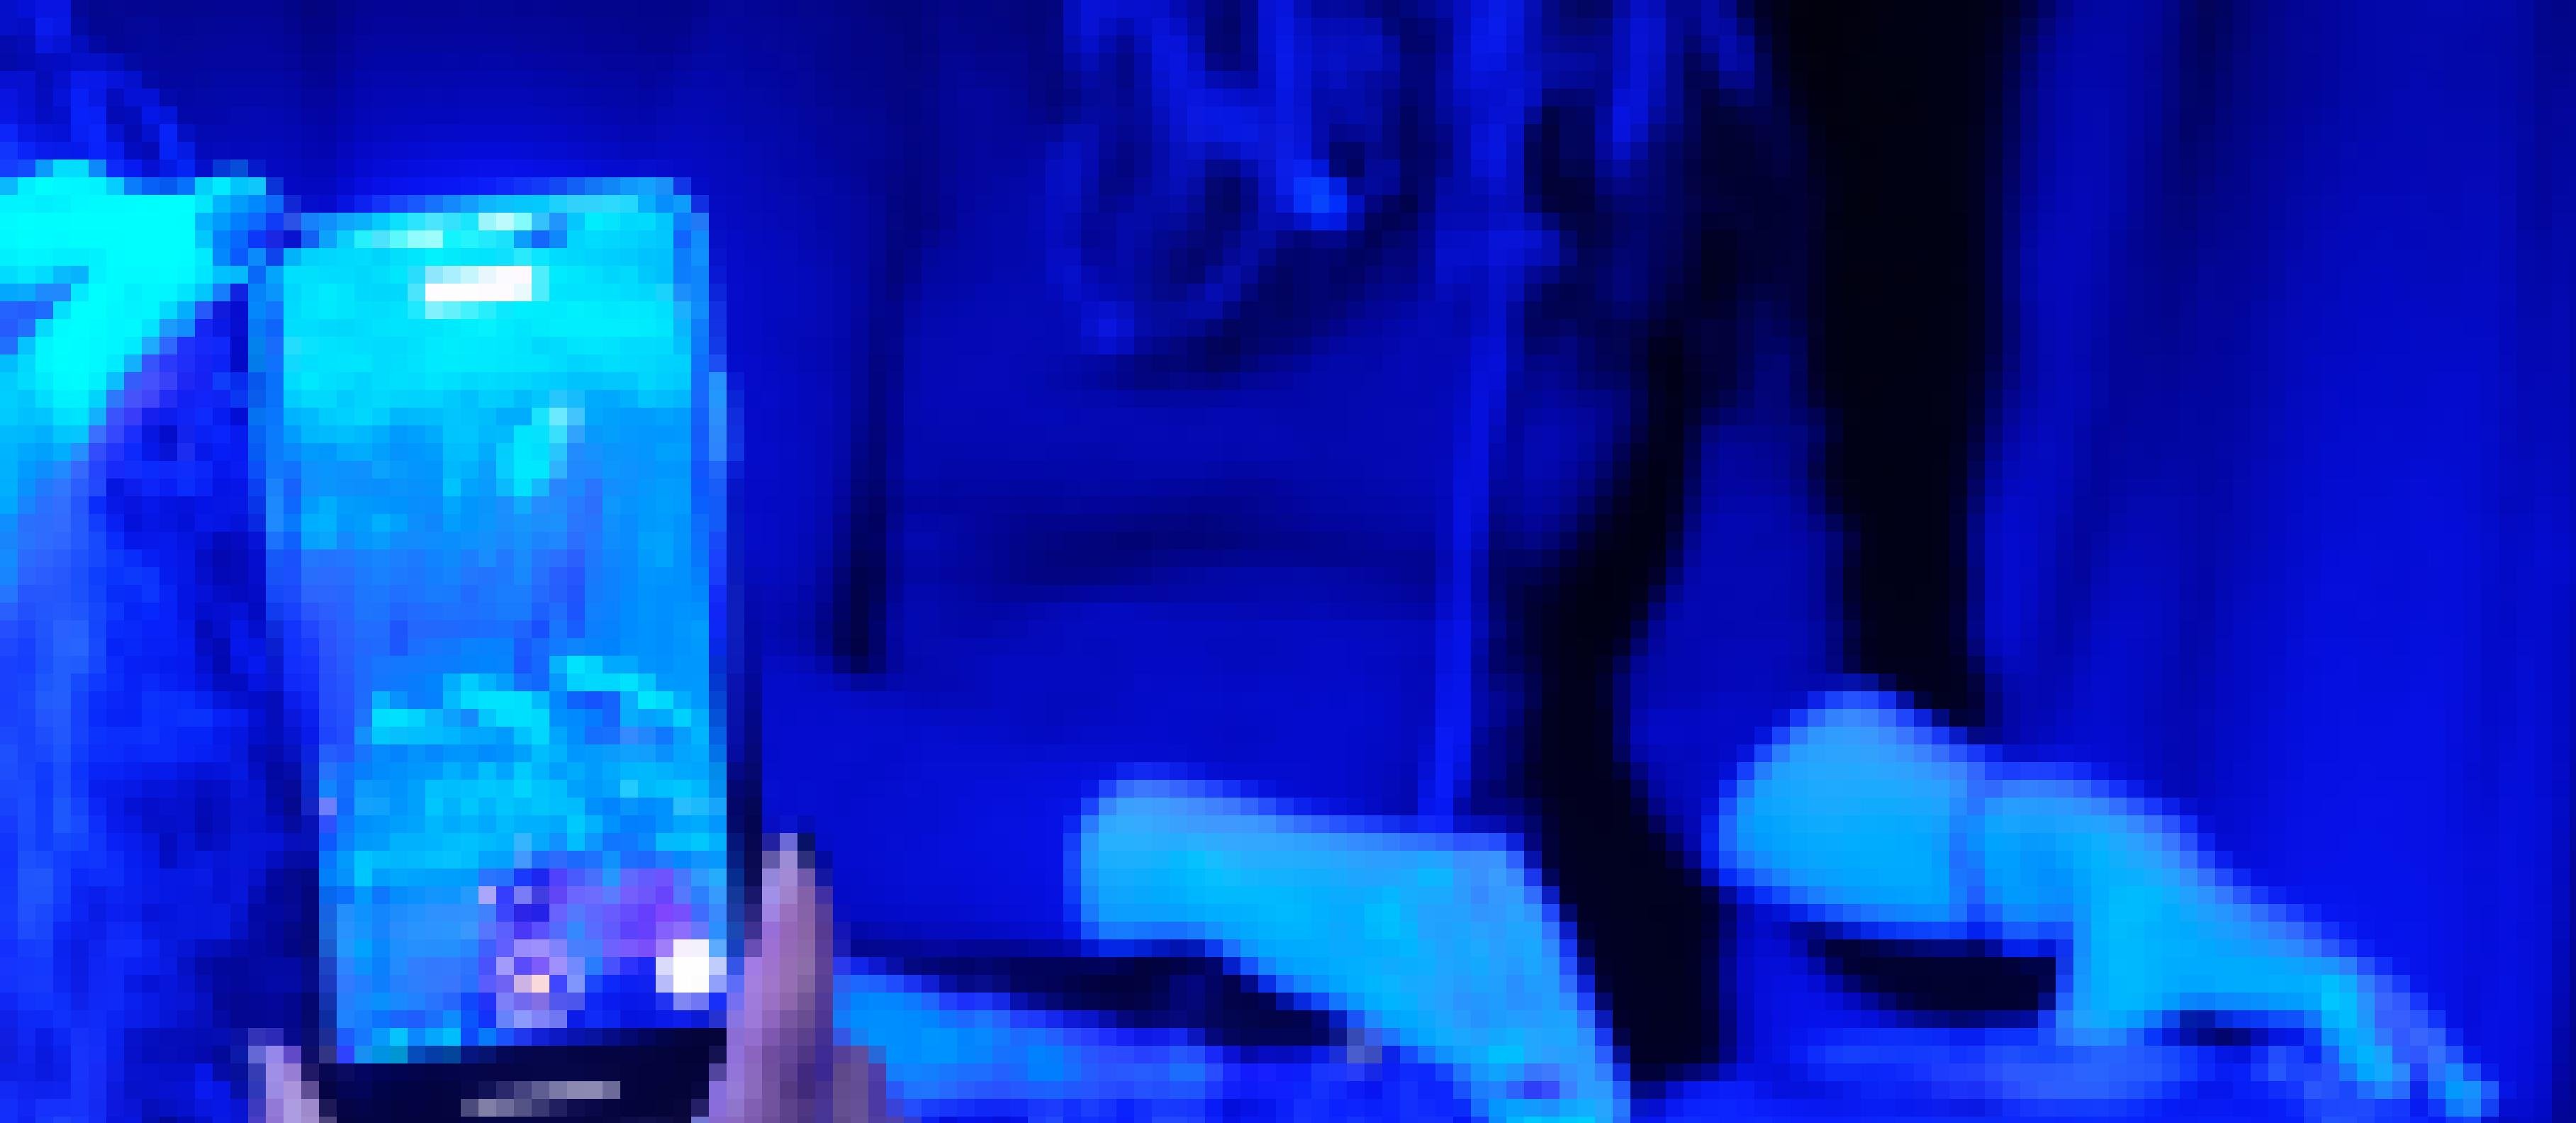 Eine Hand hält ein Handy und streamt den Mix einer Frau am Mischpult. Diese ist im Hintergrund verschwommen zu sehen.